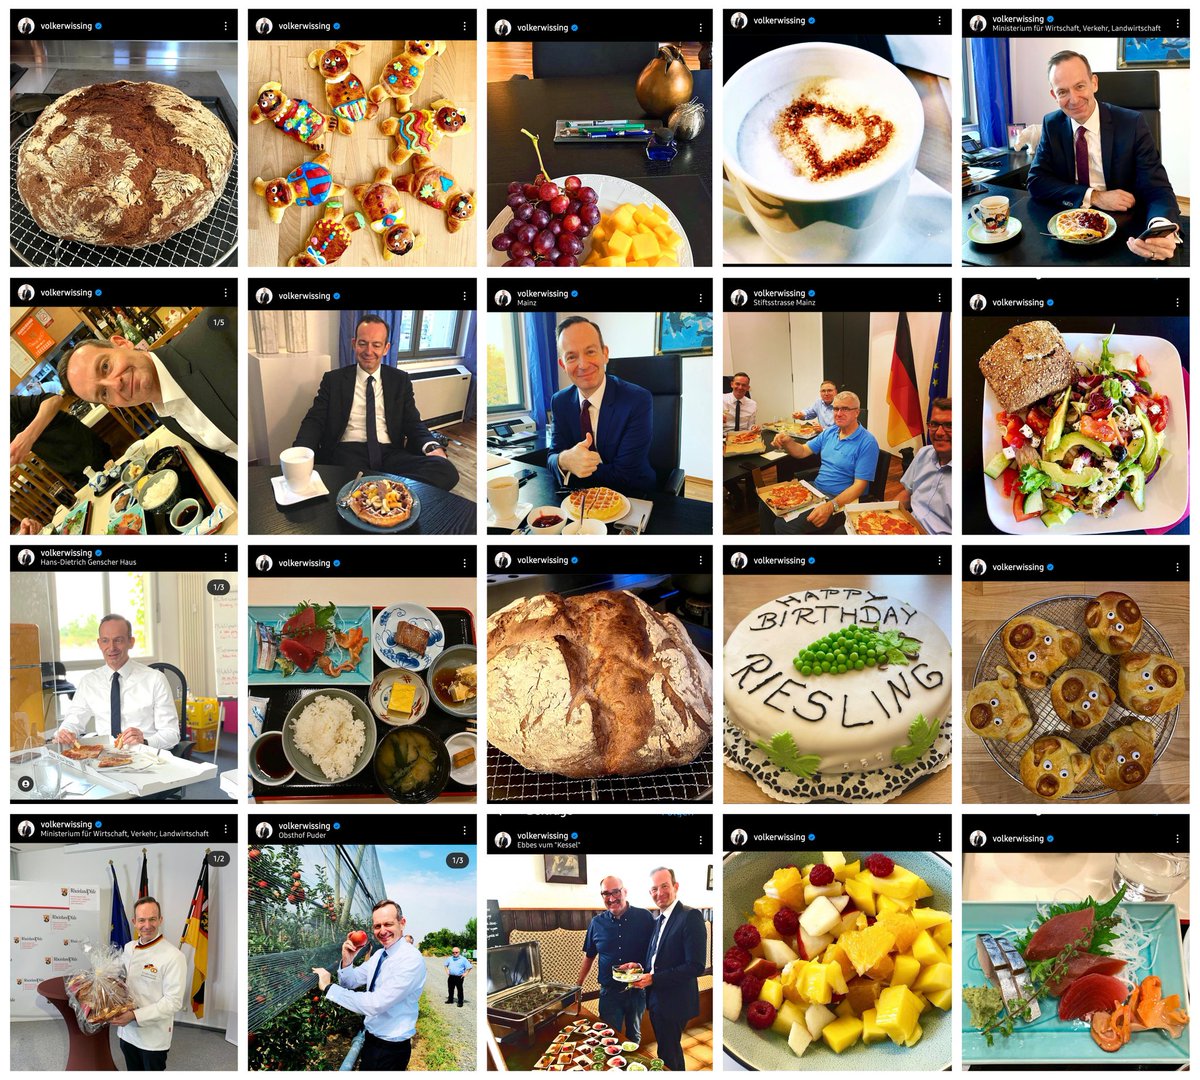 Volker Wissing: Macht weniger Fotos von Essen, weil das Klimaschädlich ist! #Wissing auf Instagram: